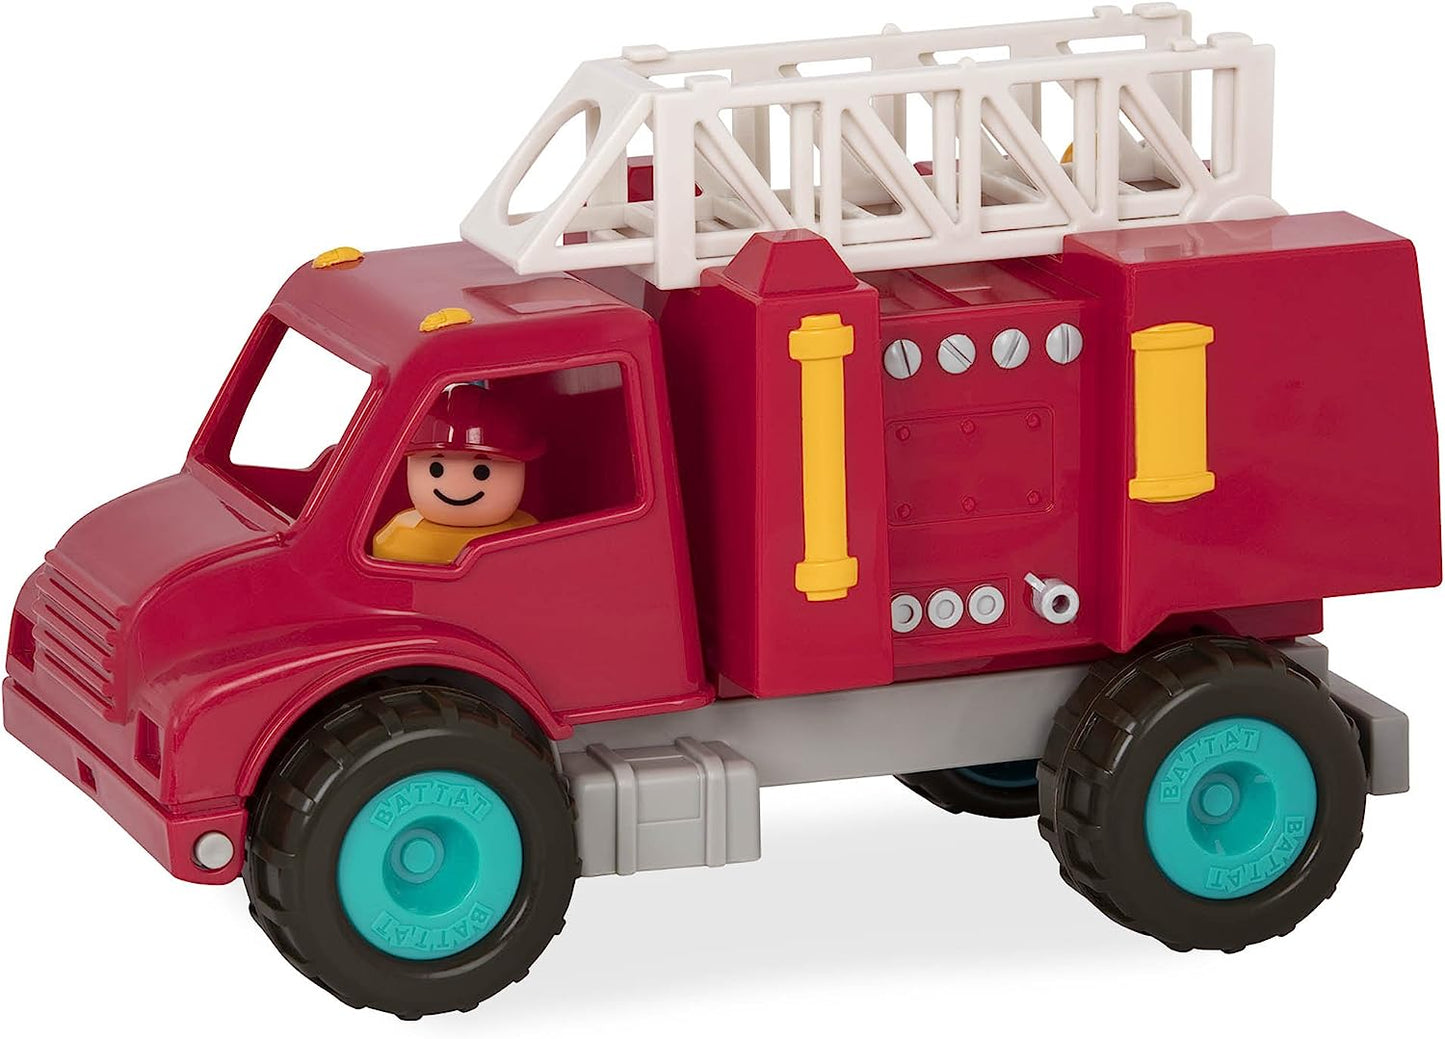 Battat - Fire Truck, Red